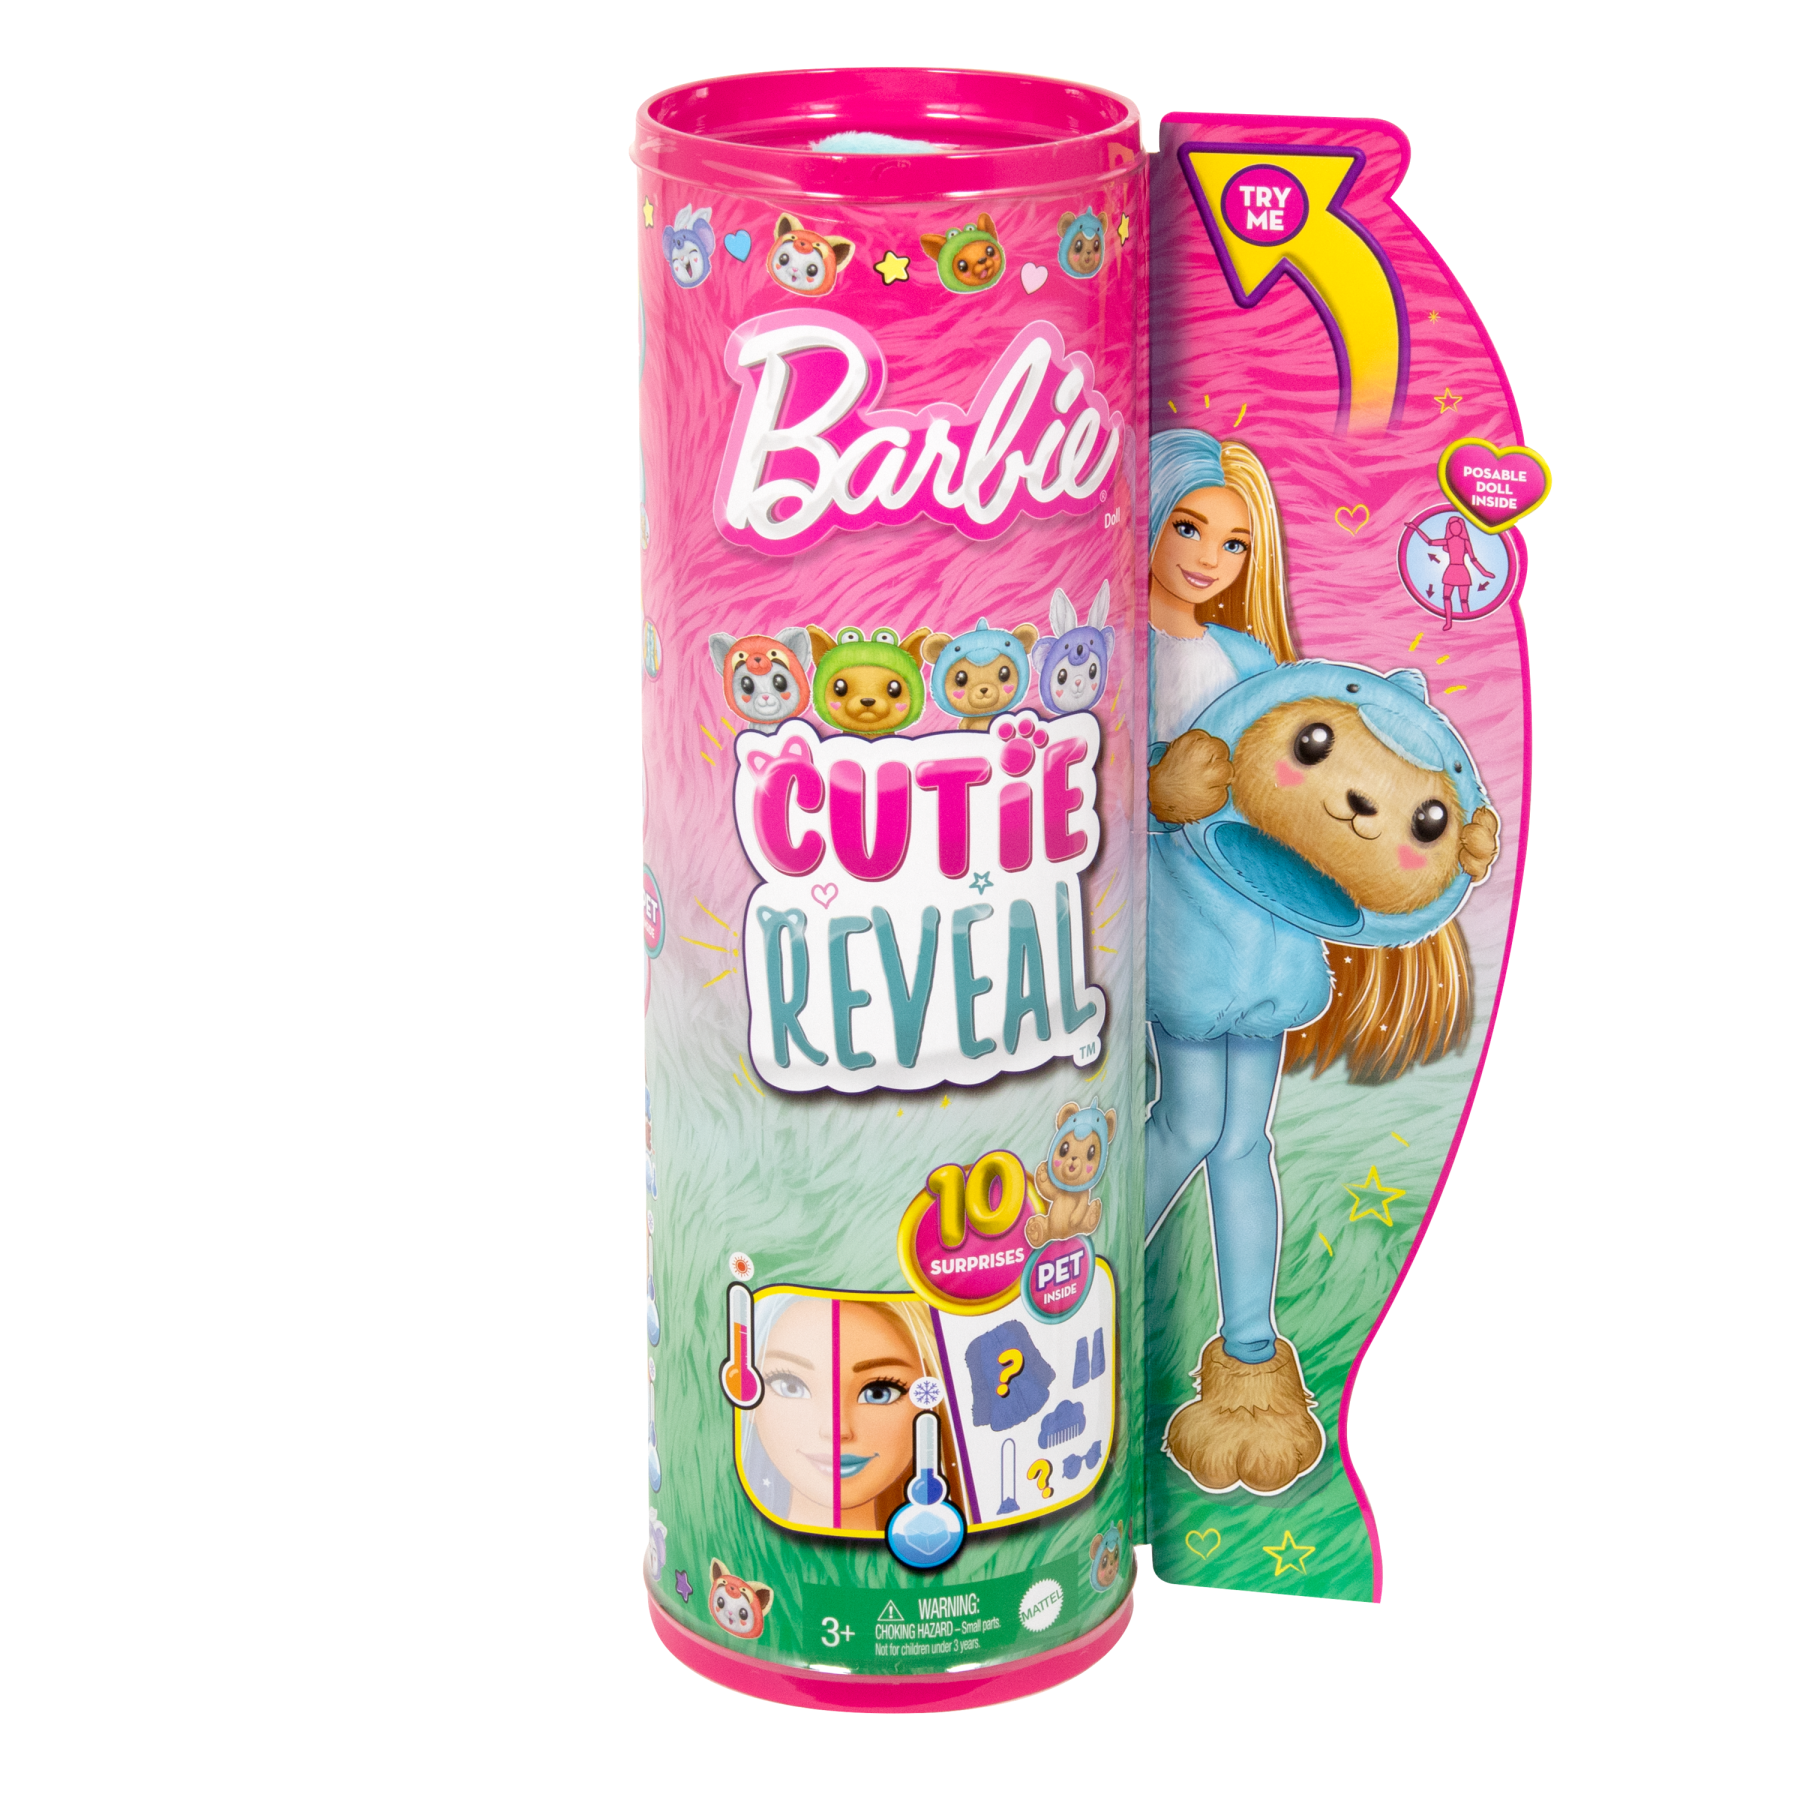 Barbie cutie reveal - bambola con costume di peluche da orsacchiotto-delfino e 10 accessori a sorpresa cambia colore, serie amici cuccioli - Barbie